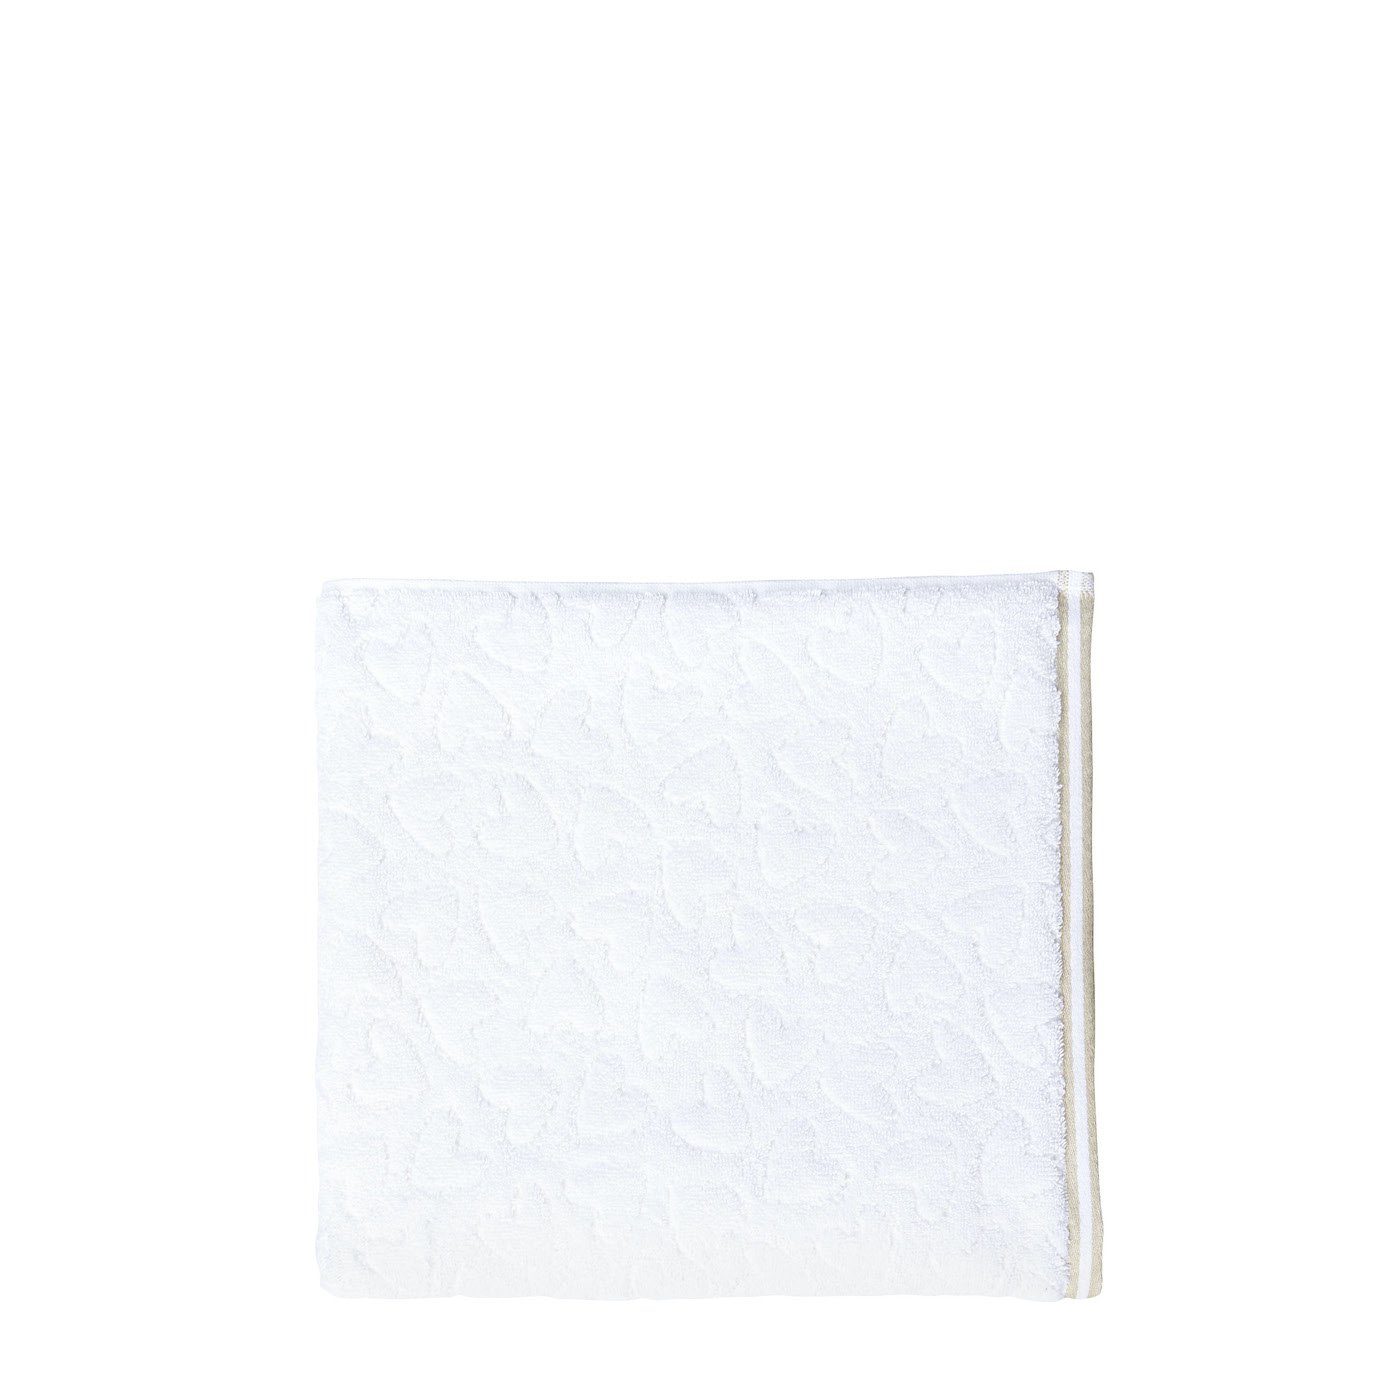 Bastion Collections Handtuch Handtuch 50x100cm 100% Baumwolle weiß natural, 100% Baumwolle